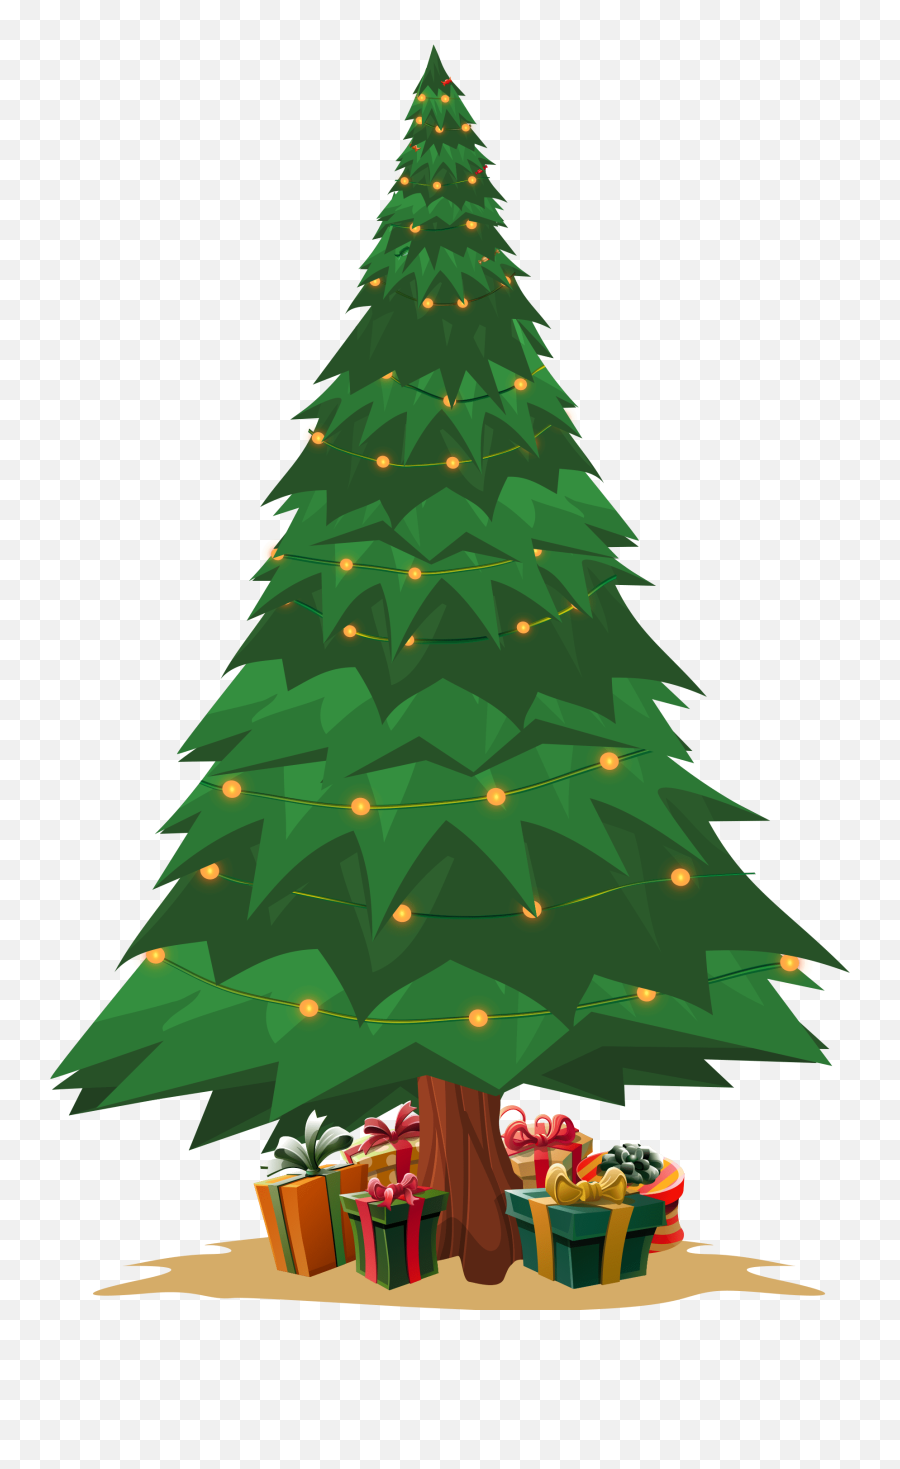 Christmas - Christmas Tree With No Star Png,Christmas Tree Star Png